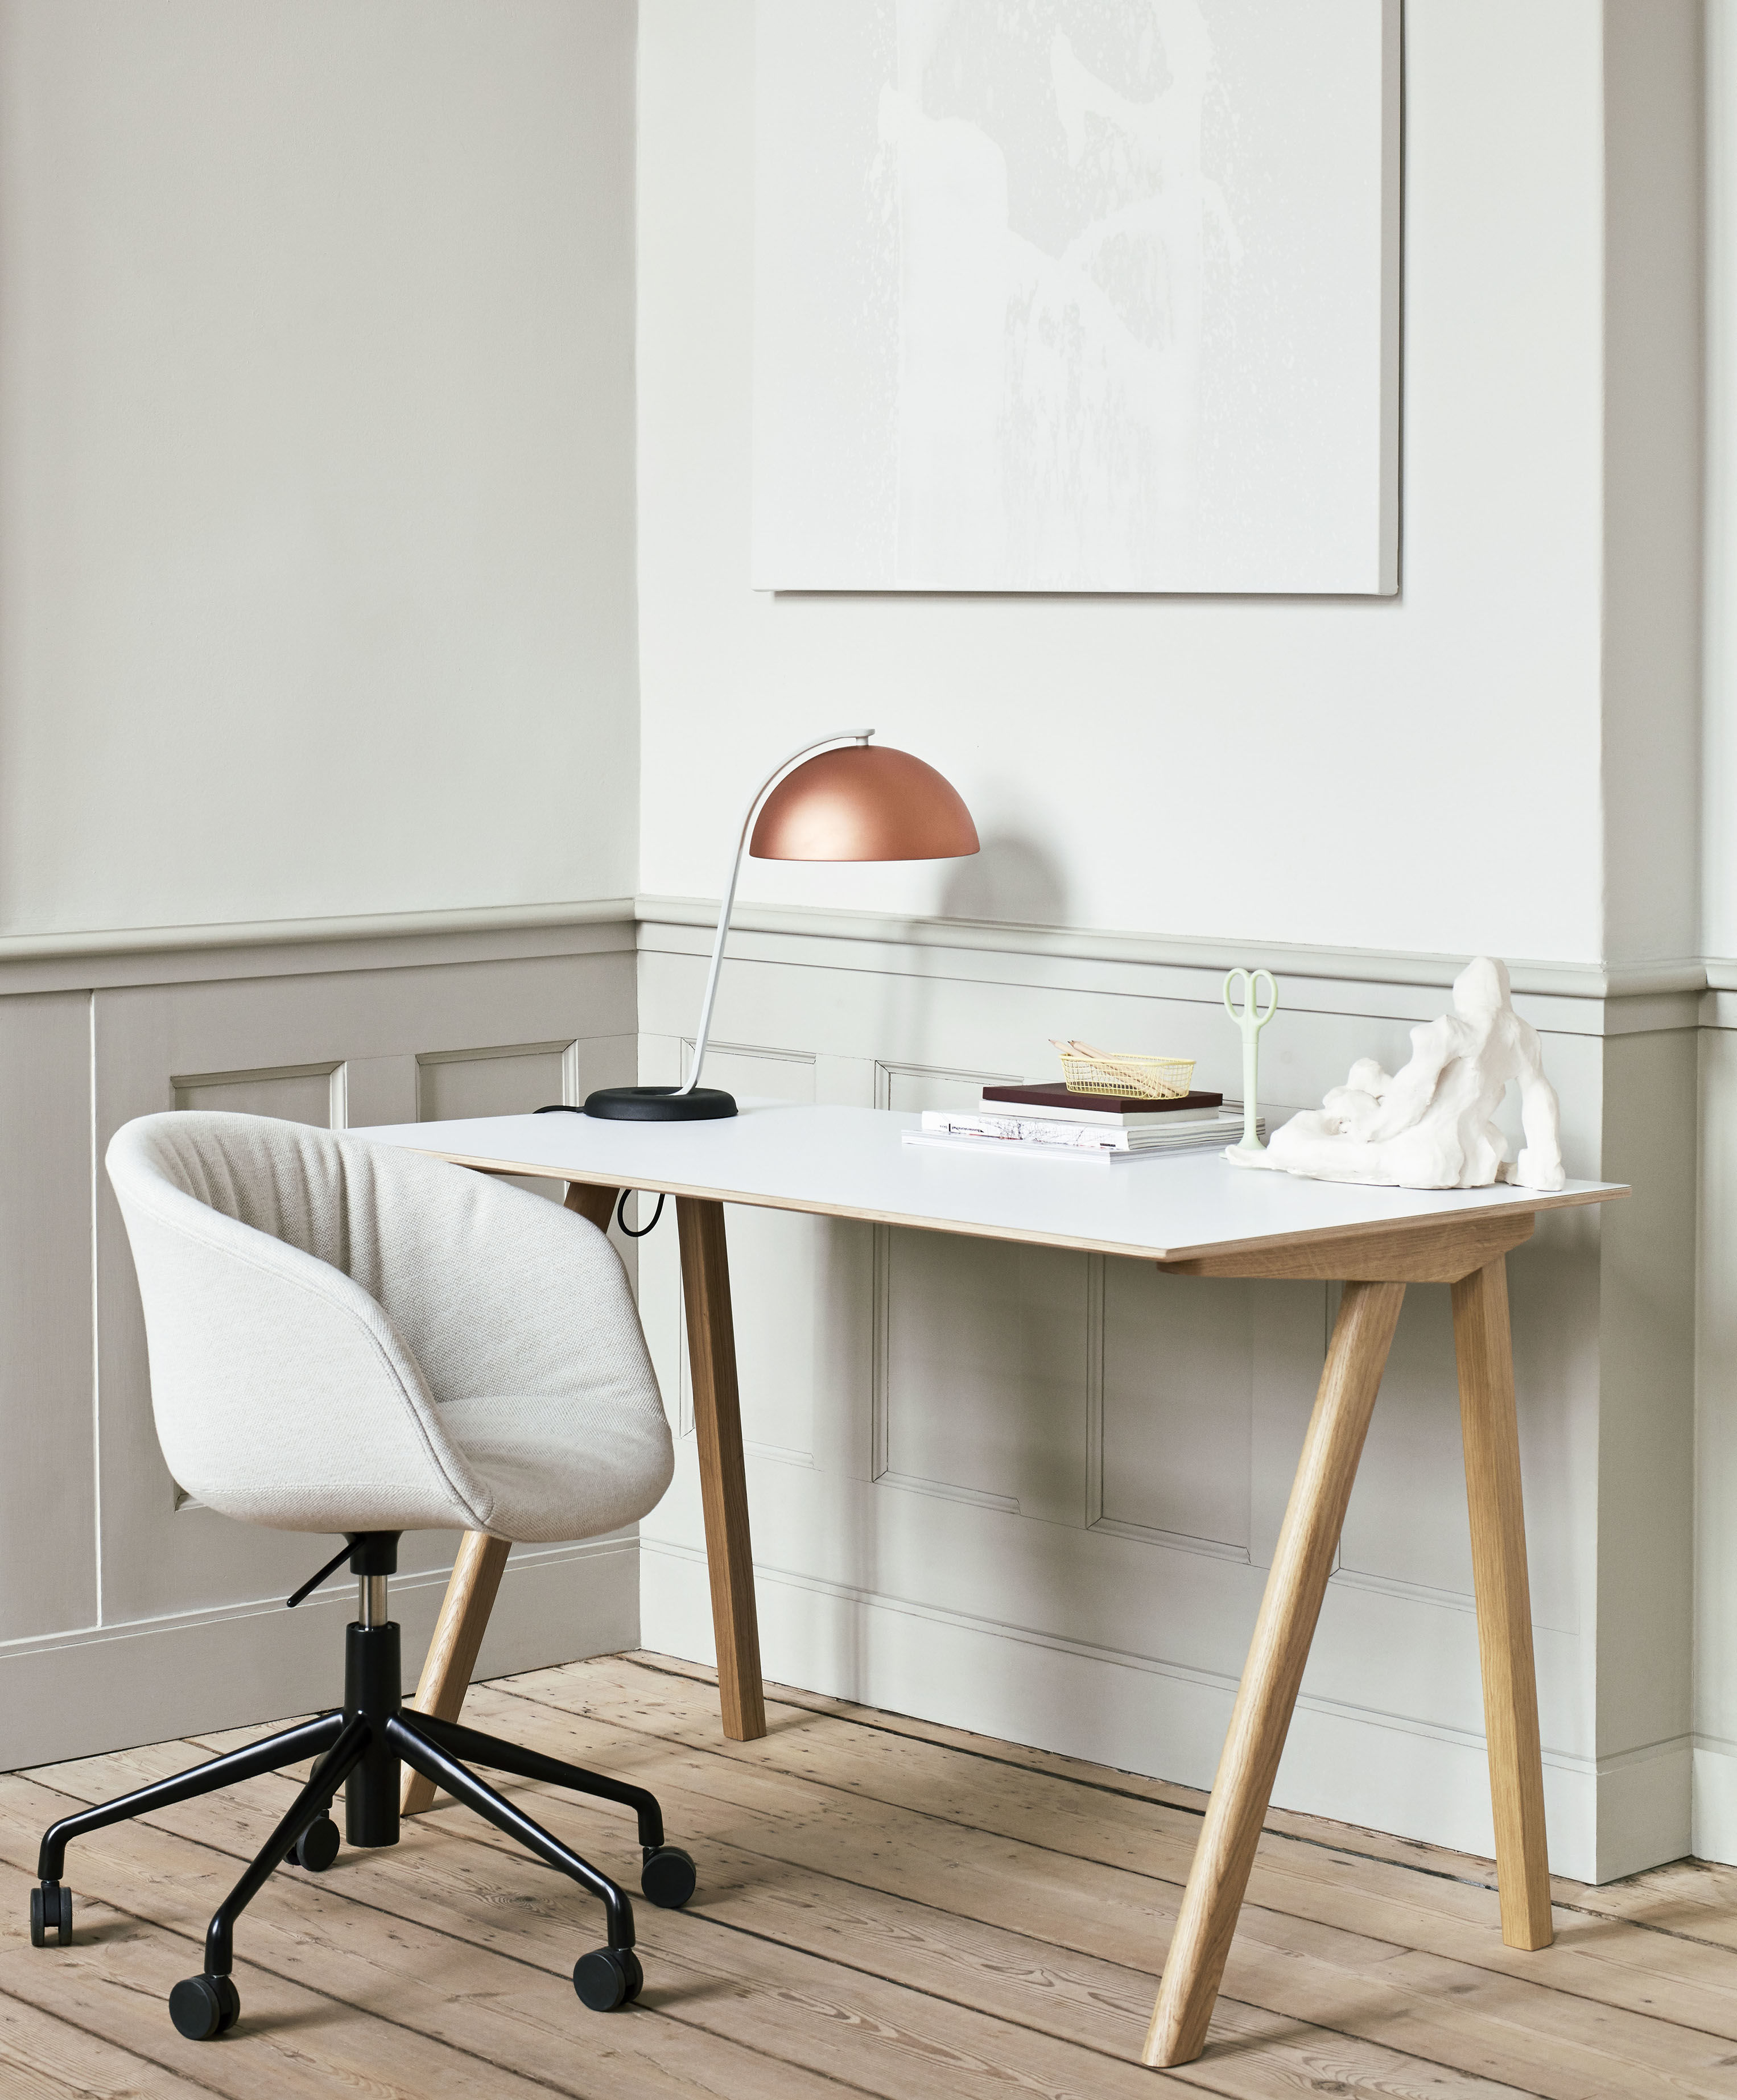 Aanmoediging Tegenstrijdigheid salaris Hay Copenhague CPH 90 DESK Desk - white beige | Made In Design UK